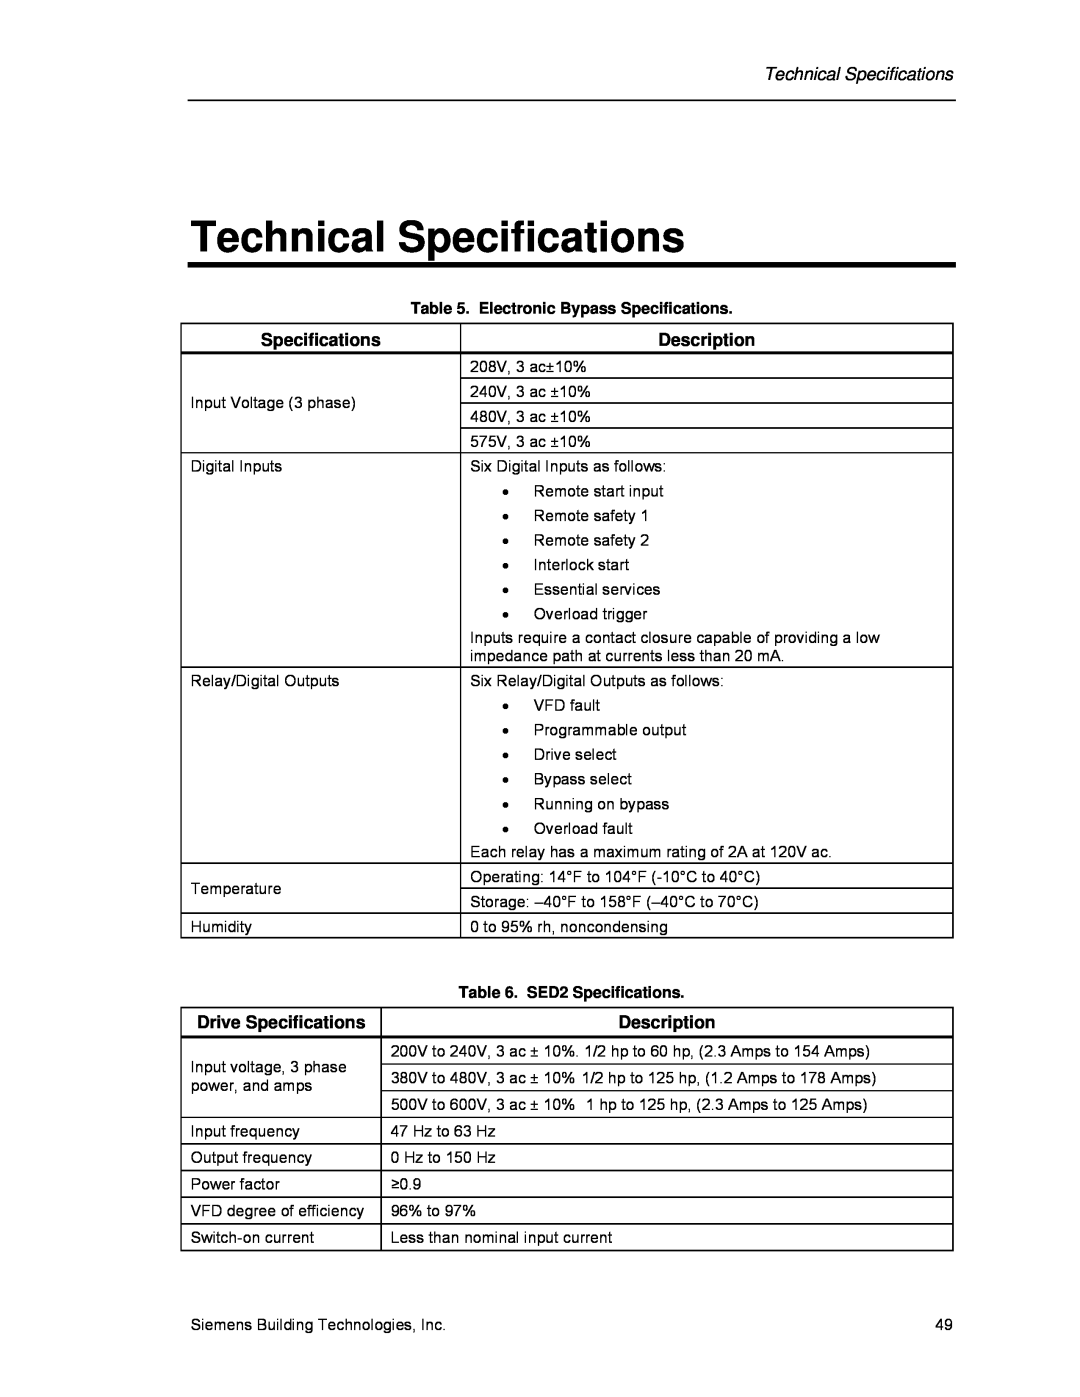 Siemens 125-3208 Technical Specifications, Description, Drive Specifications, Electronic Bypass Specifications 